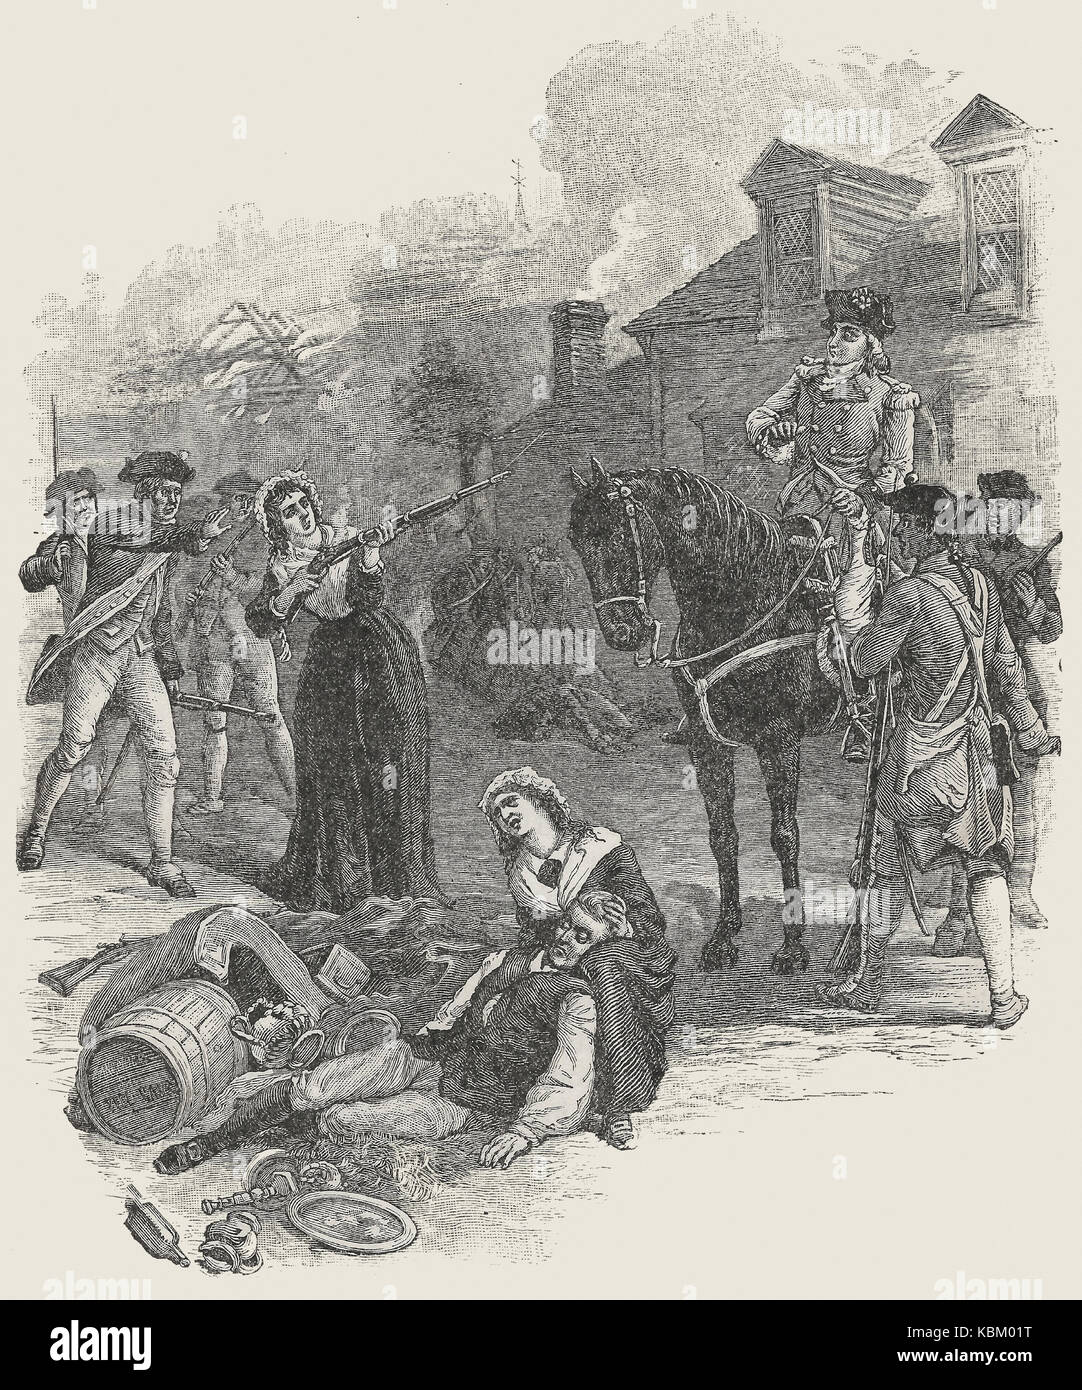 Échappé de Benedict Arnold, lors de la gravure de New London, dans le Connecticut au cours de la Révolution américaine Banque D'Images